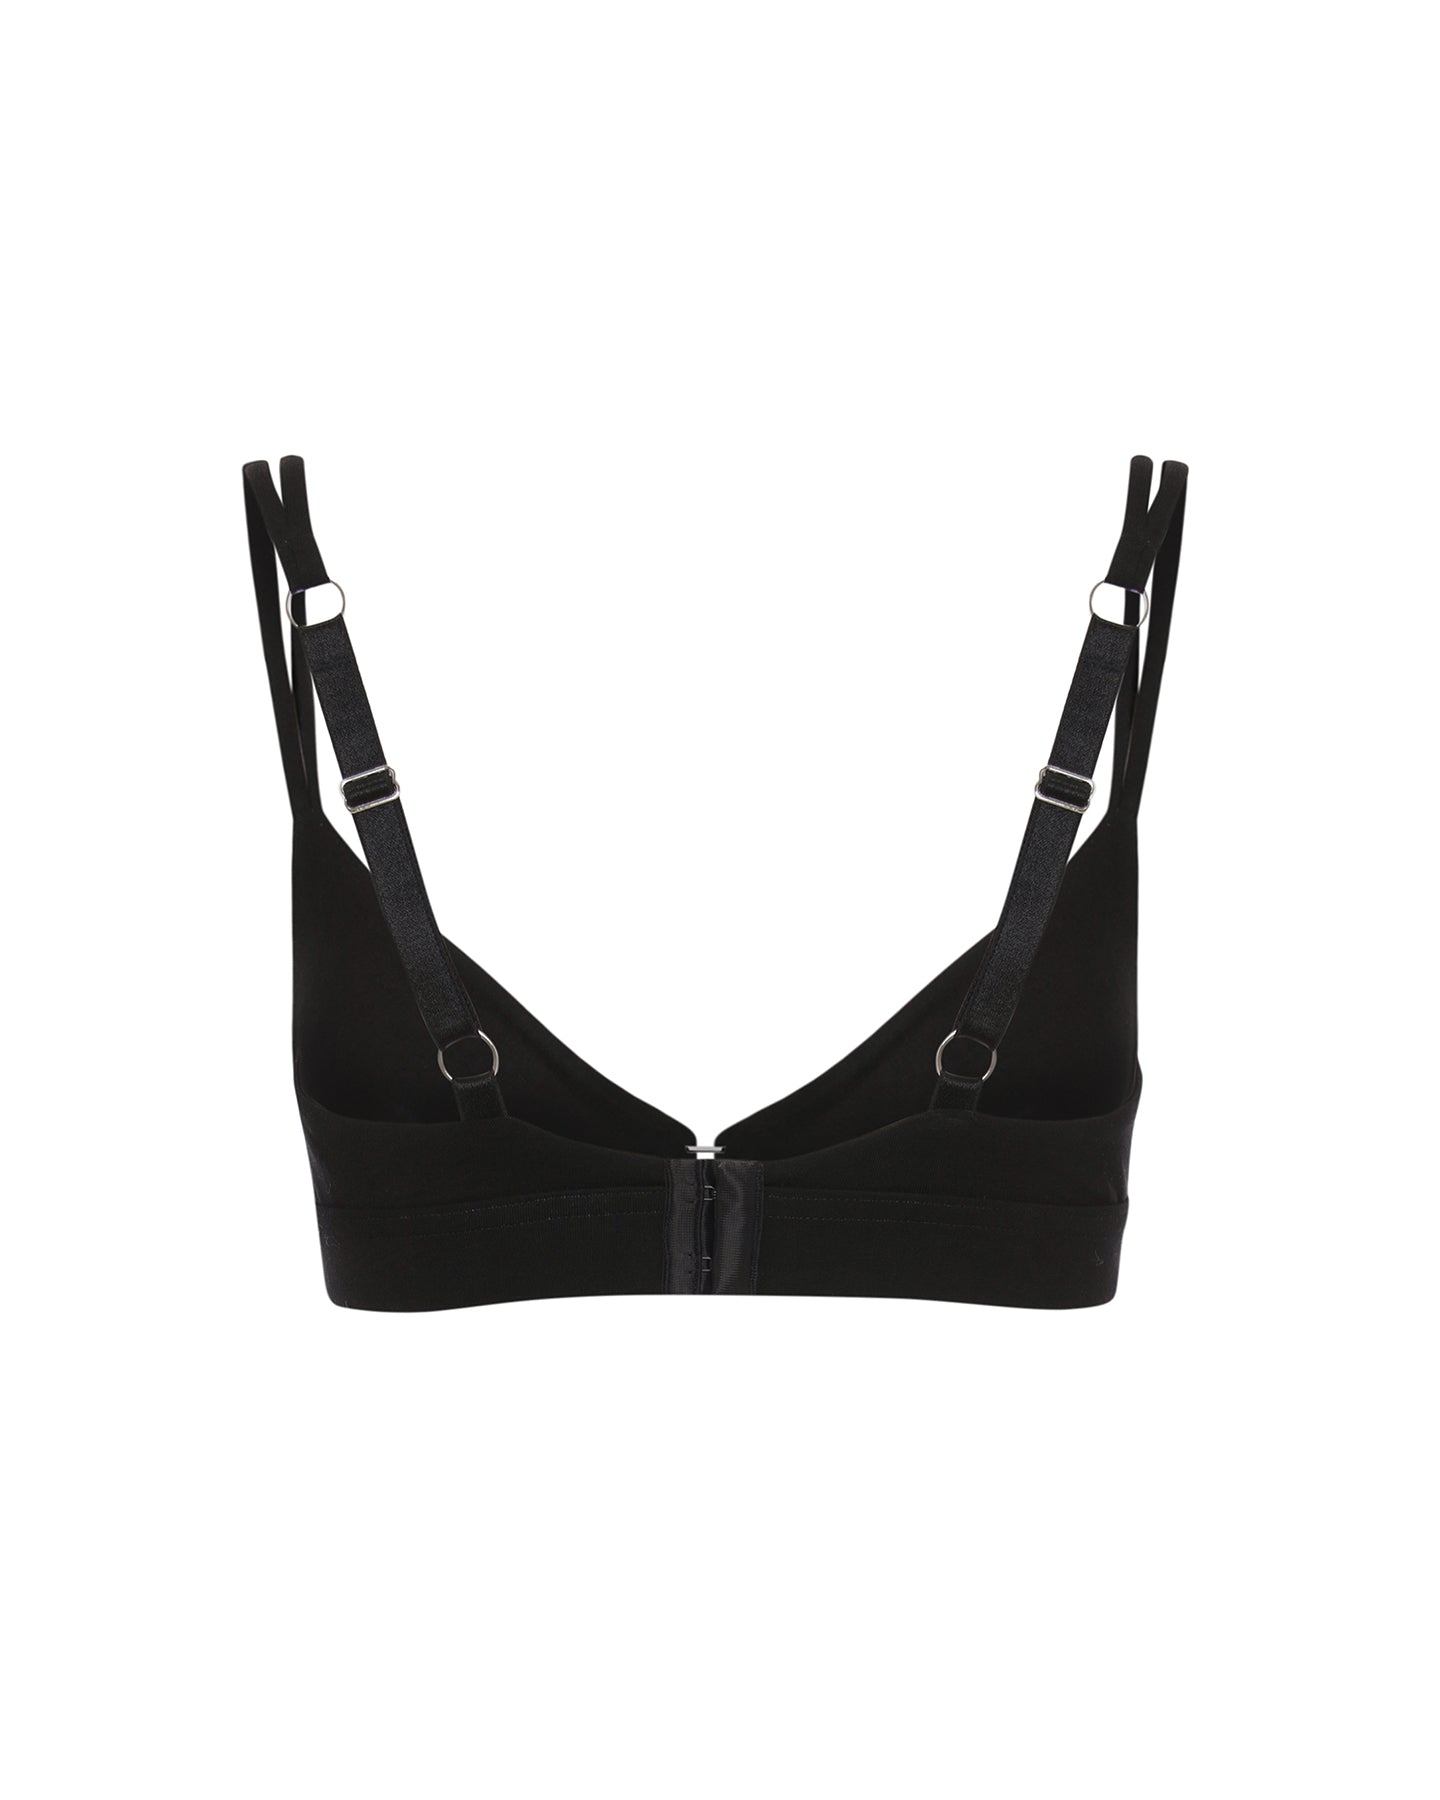 Black organic cotton bra | sexy lingerie | Black Bralette Bra | Lyzawear